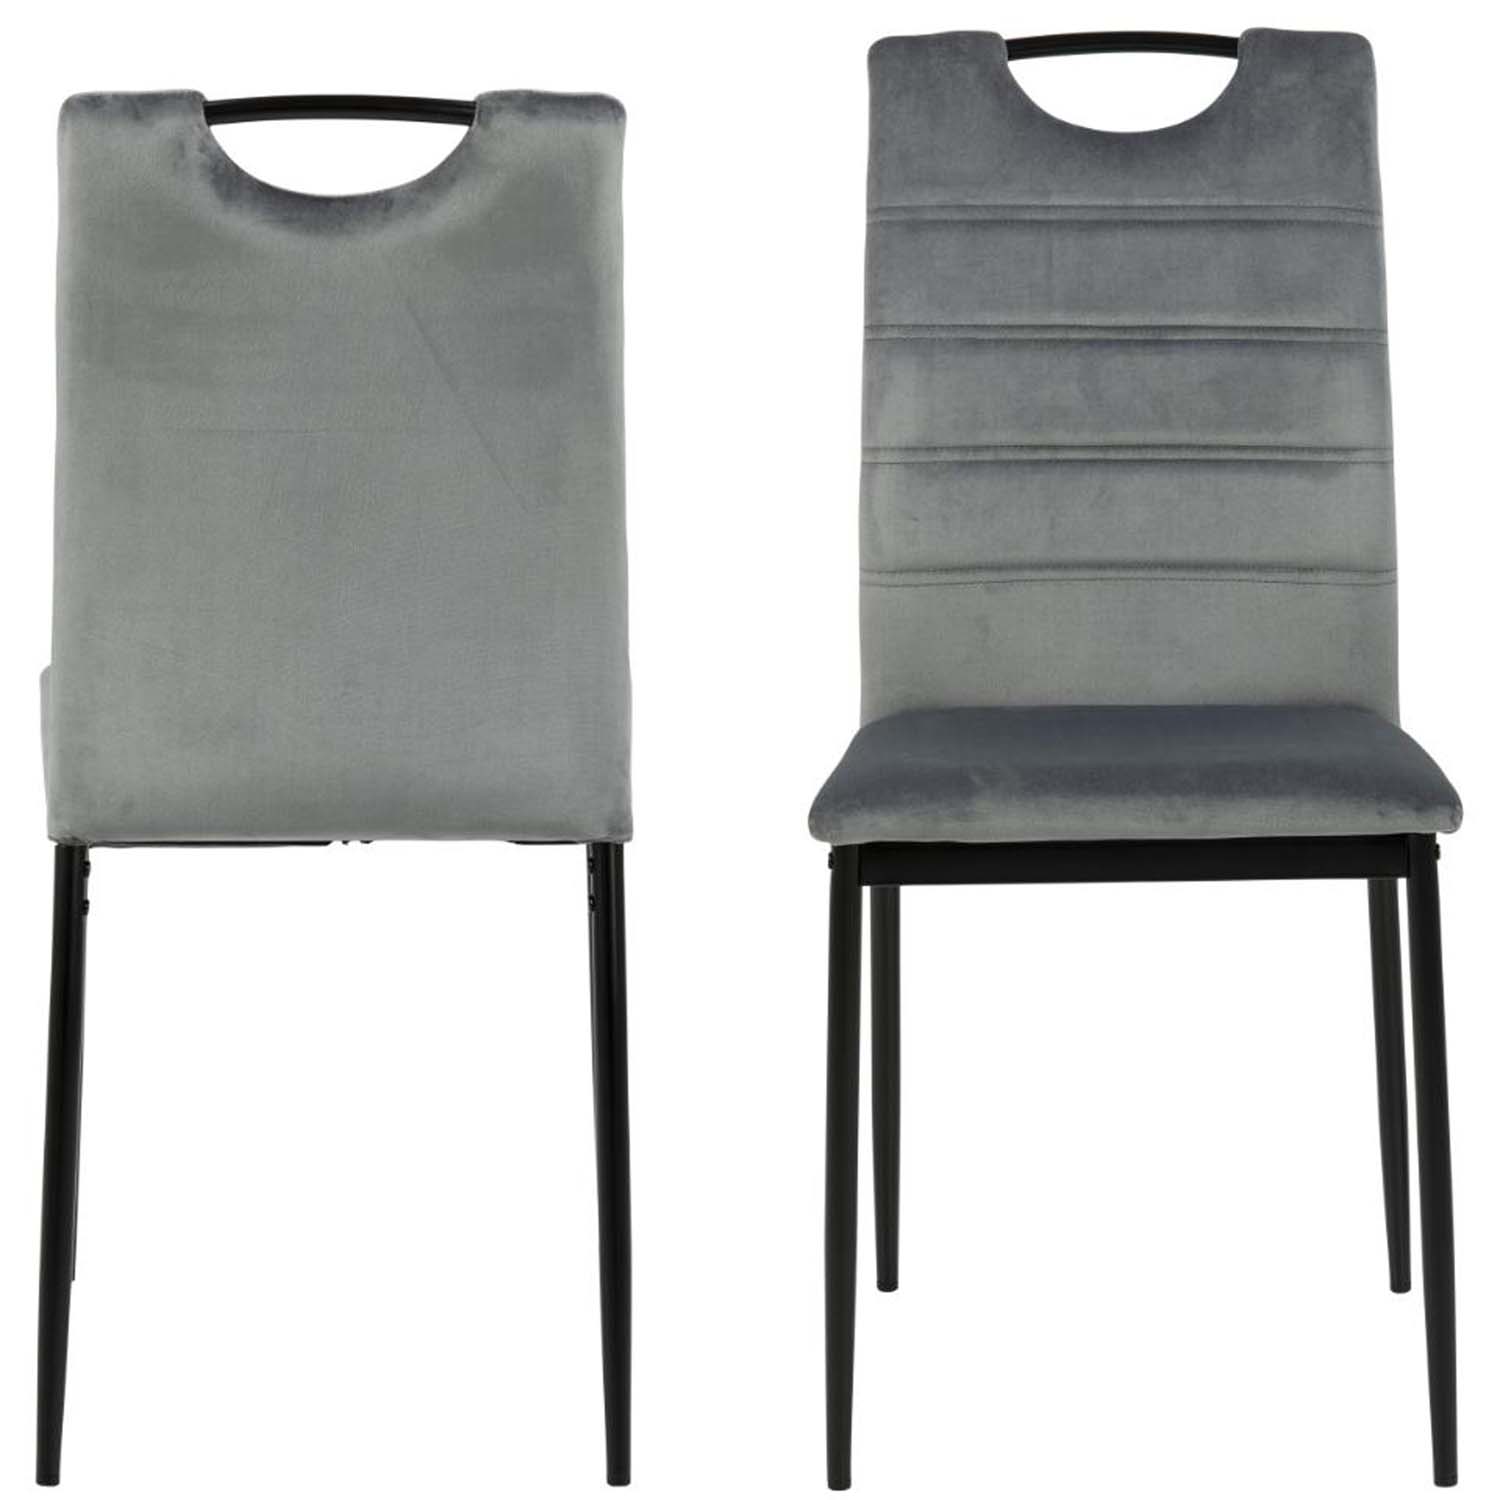 ACT NORDIC Dia spisebordsstol - mørkegrå polyester og sort metal